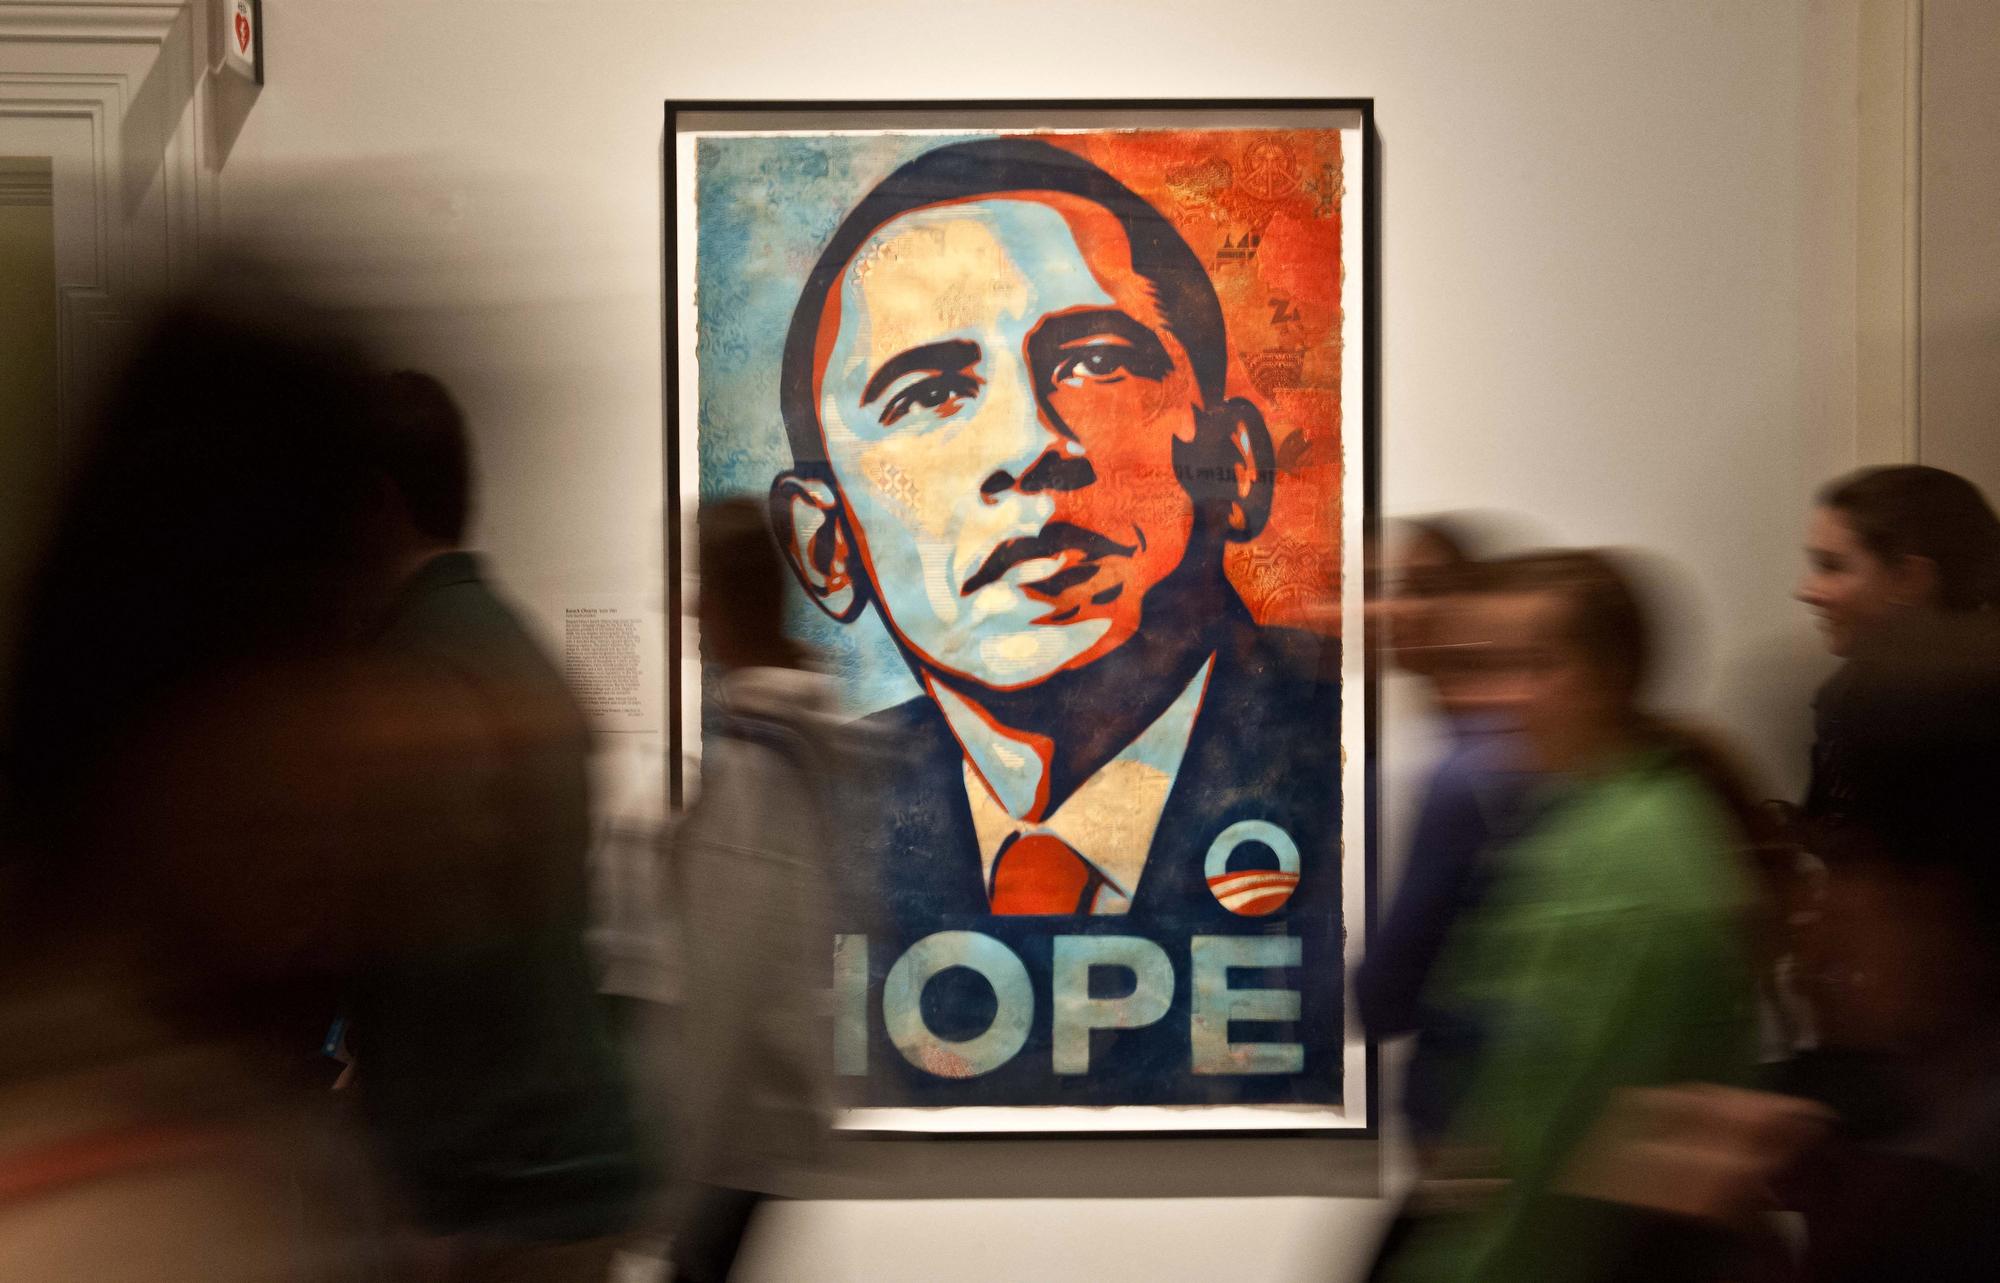 Le portrait de Barack Obama par Shepard Fairey d'après une photo de Mannie Garcia à la National Portrait Gallery de Washington (janvier 2013). [AFP - Nicholas Kamm]